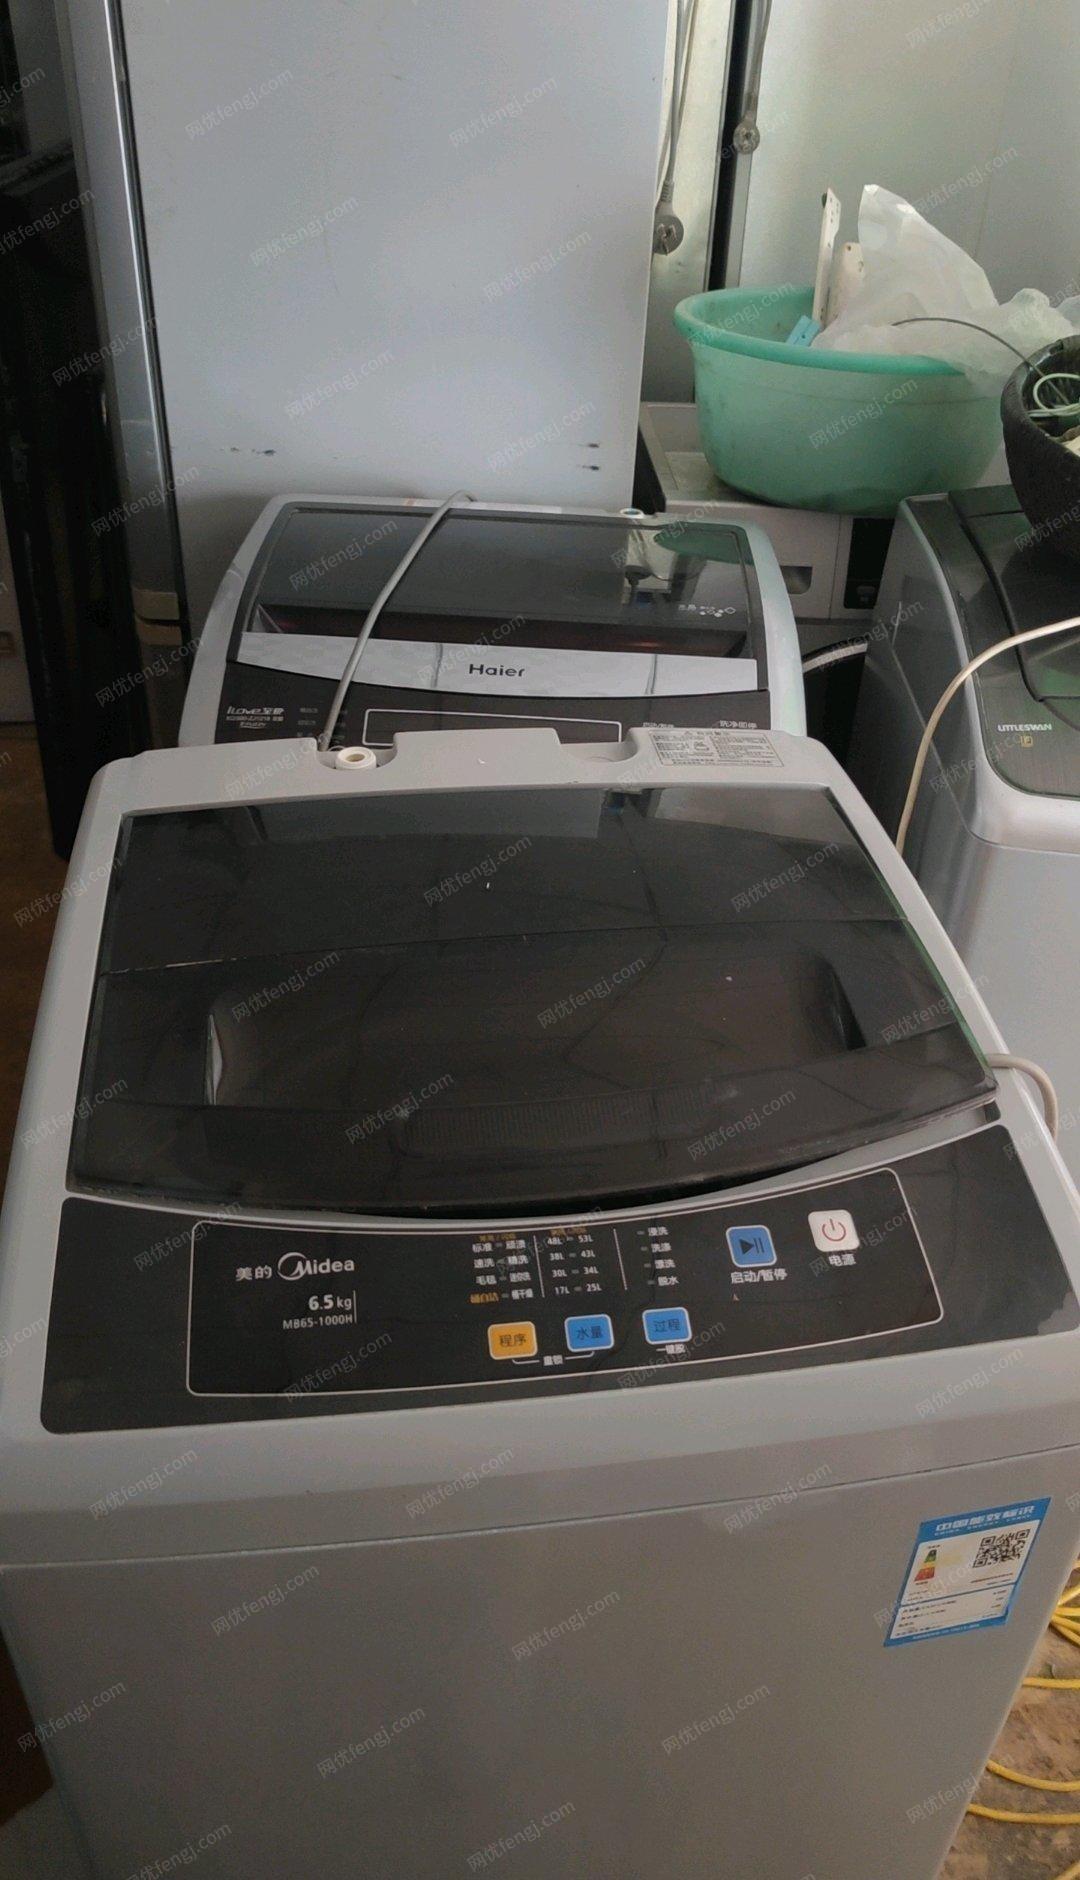 新疆乌鲁木齐二手冰箱洗衣机电视出售